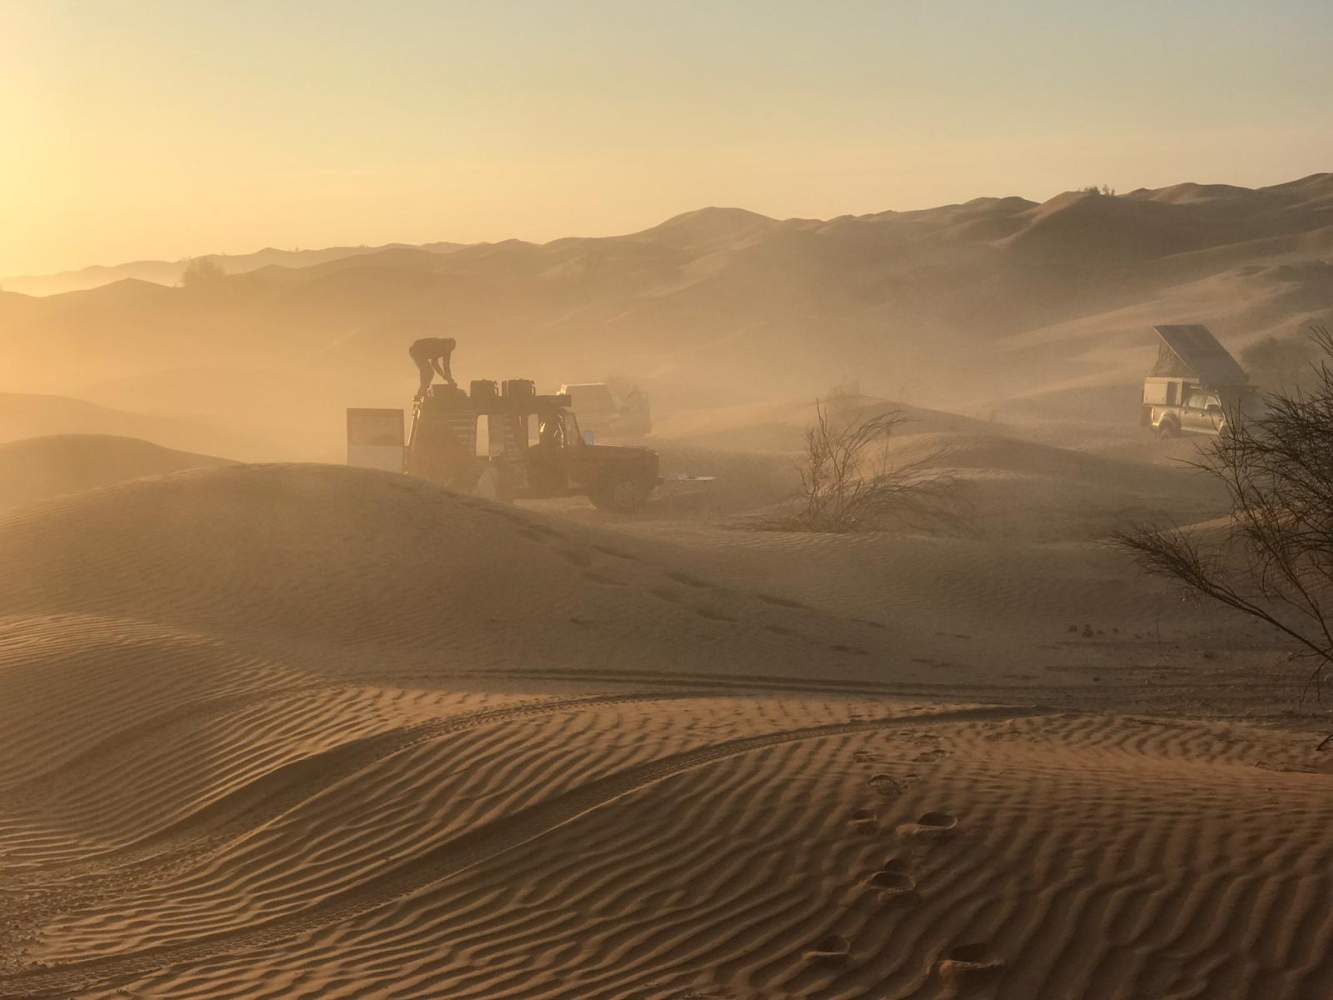 Aufbau des Camps nahe der Oase Ksar Ghilane während eines Sandsturms bei Sonnenuntergang